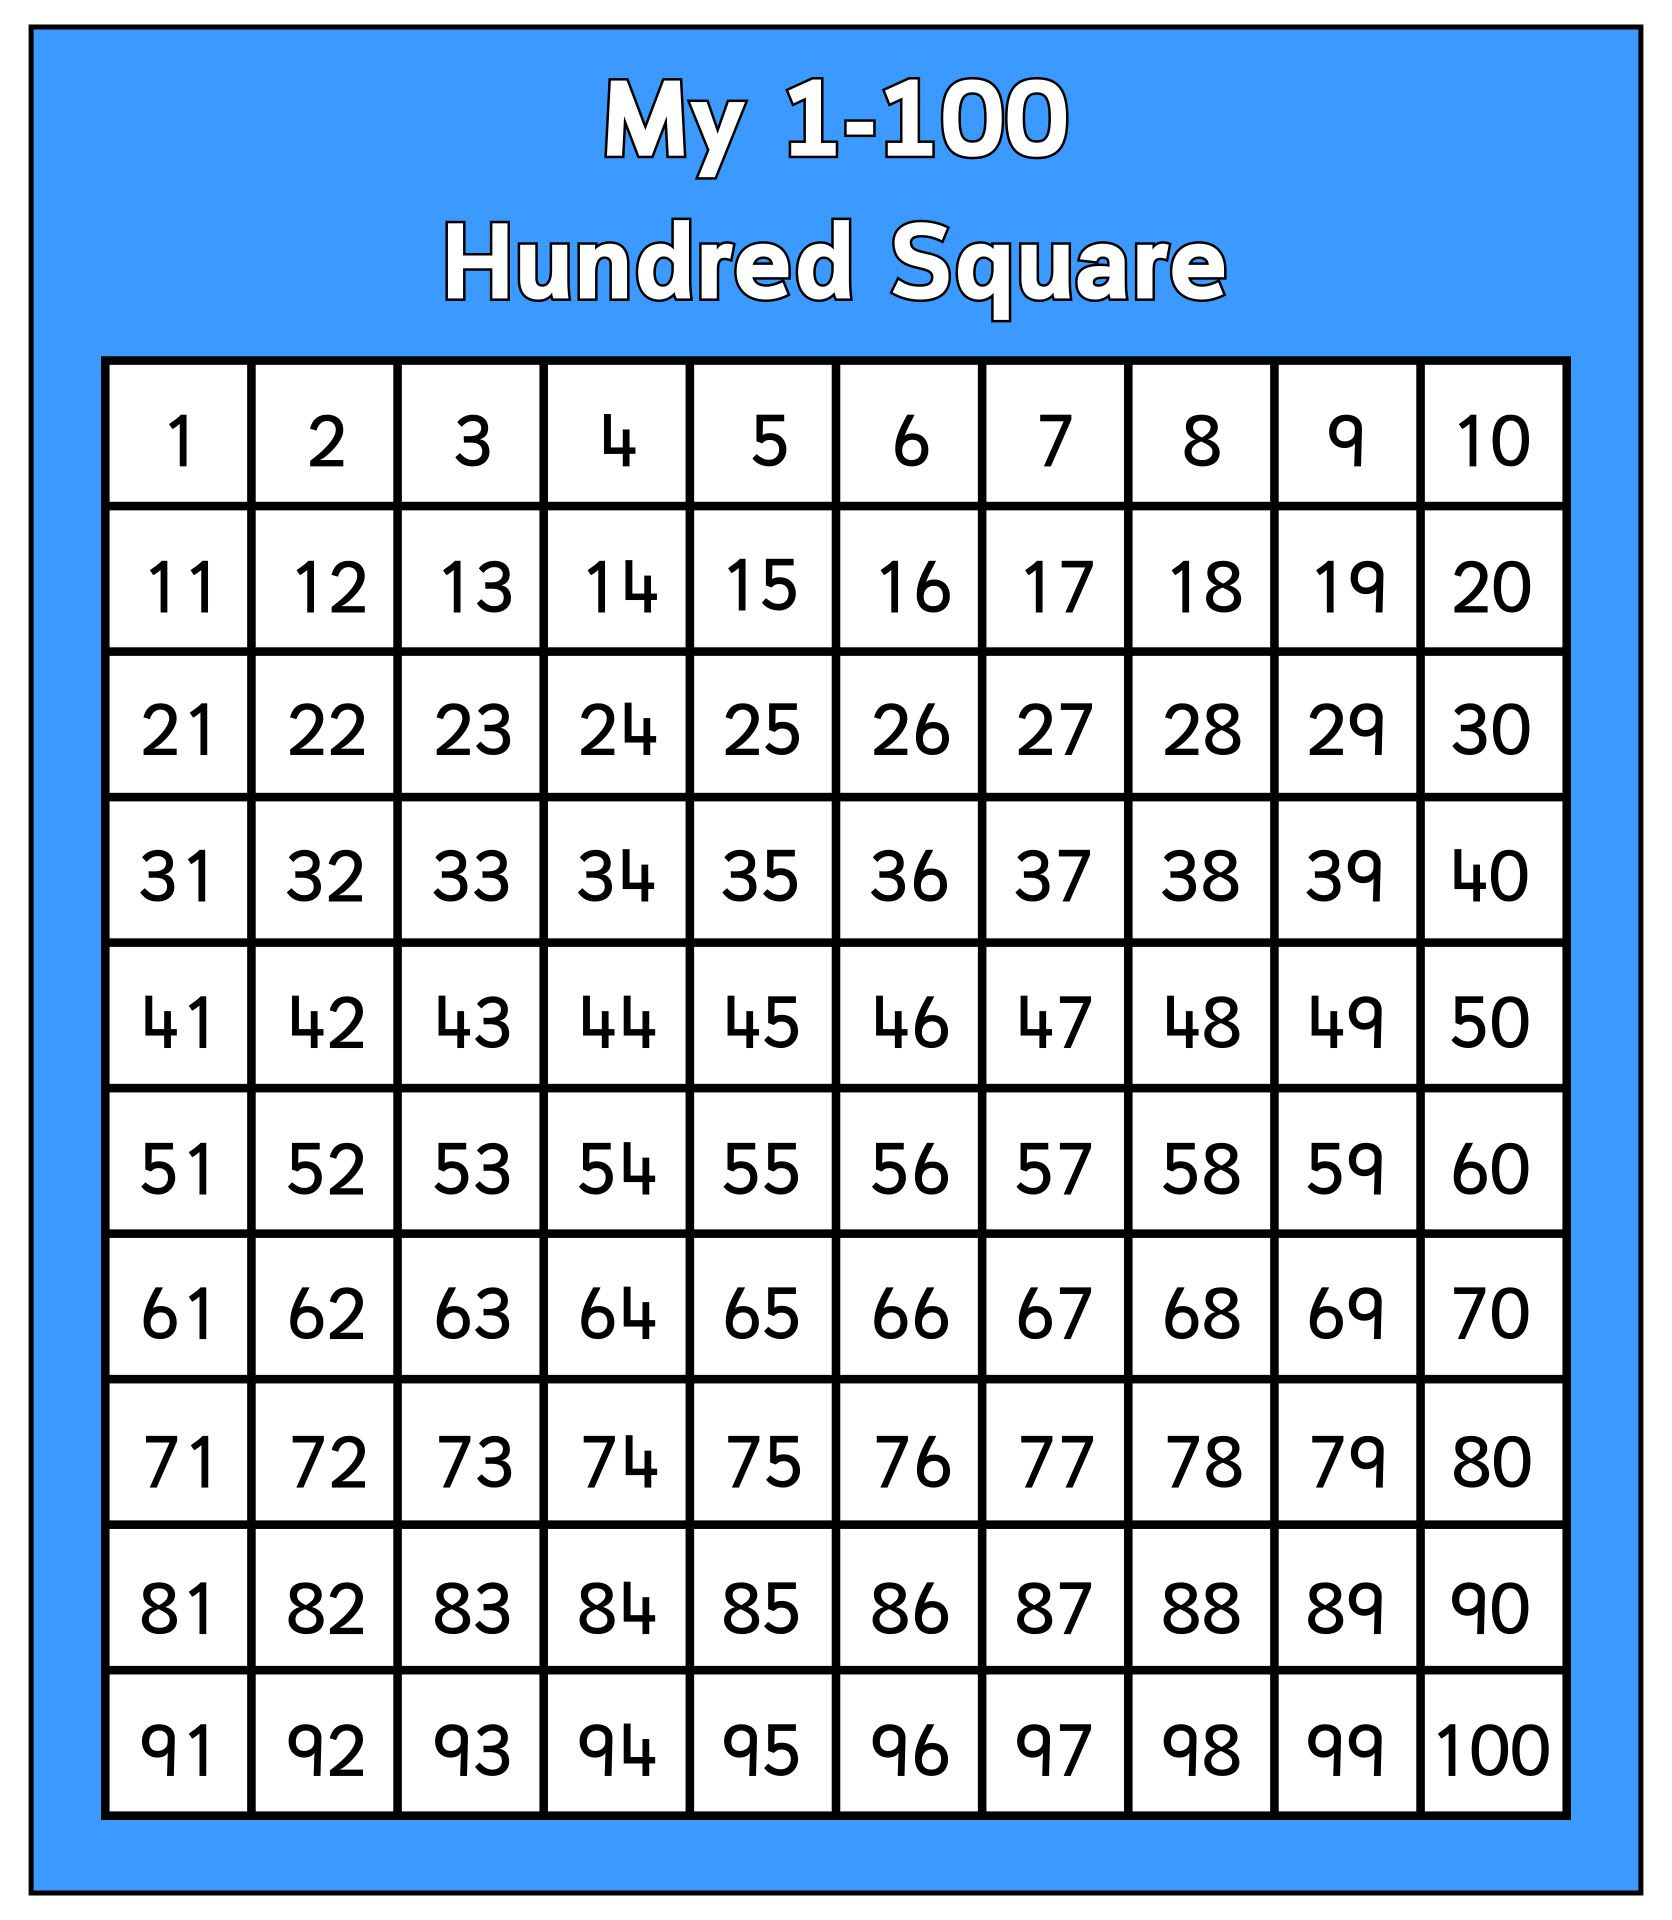 blank-hundred-square-calendar-june